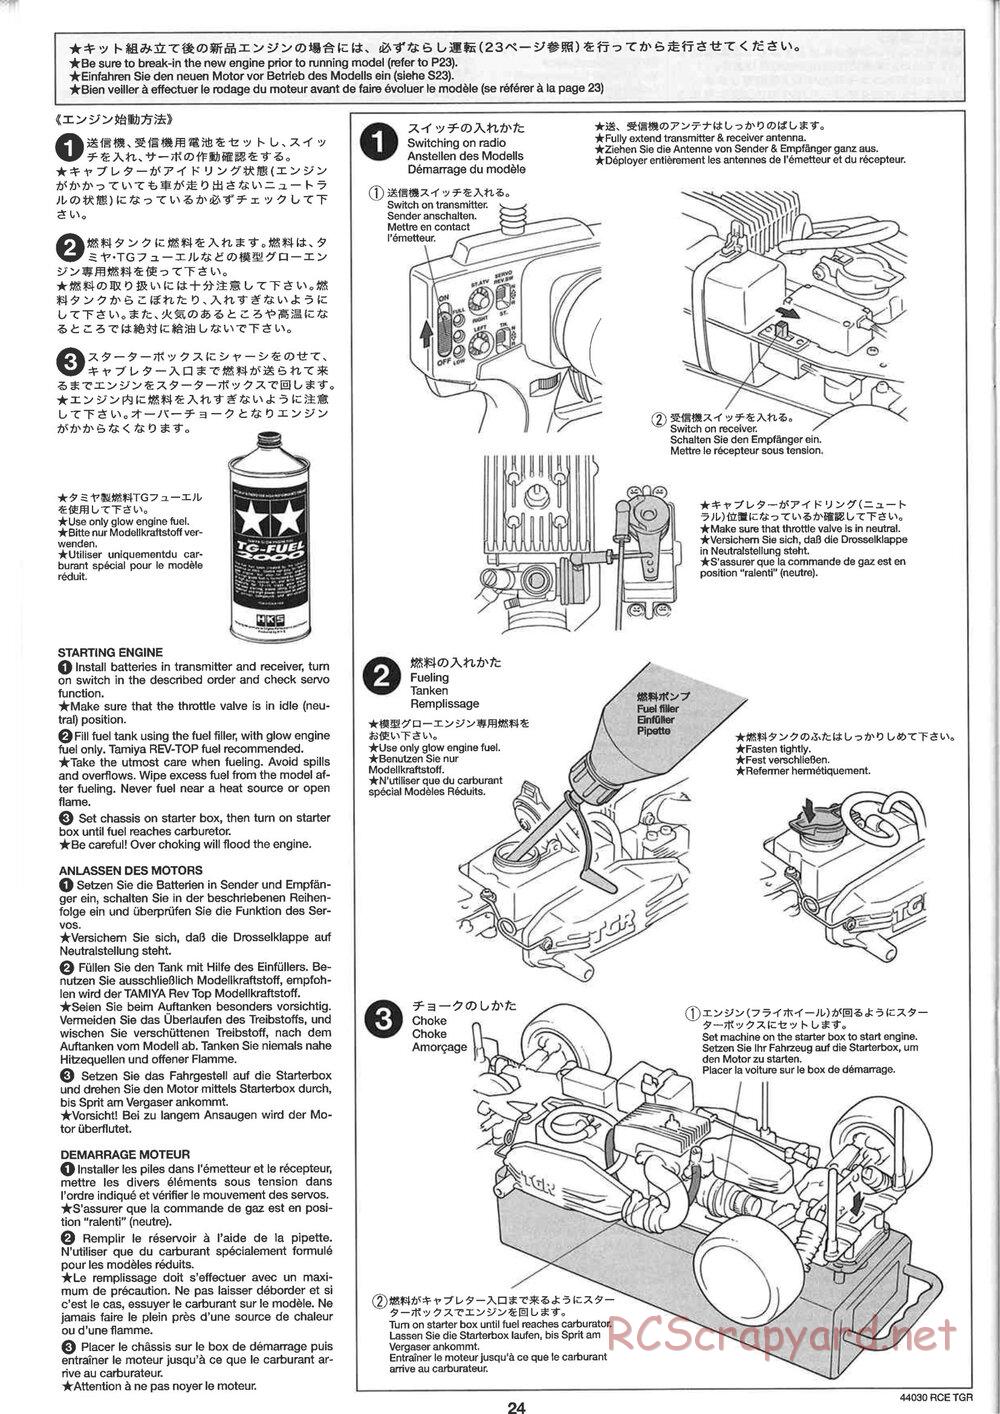 Tamiya - TGR Chassis - Manual - Page 24